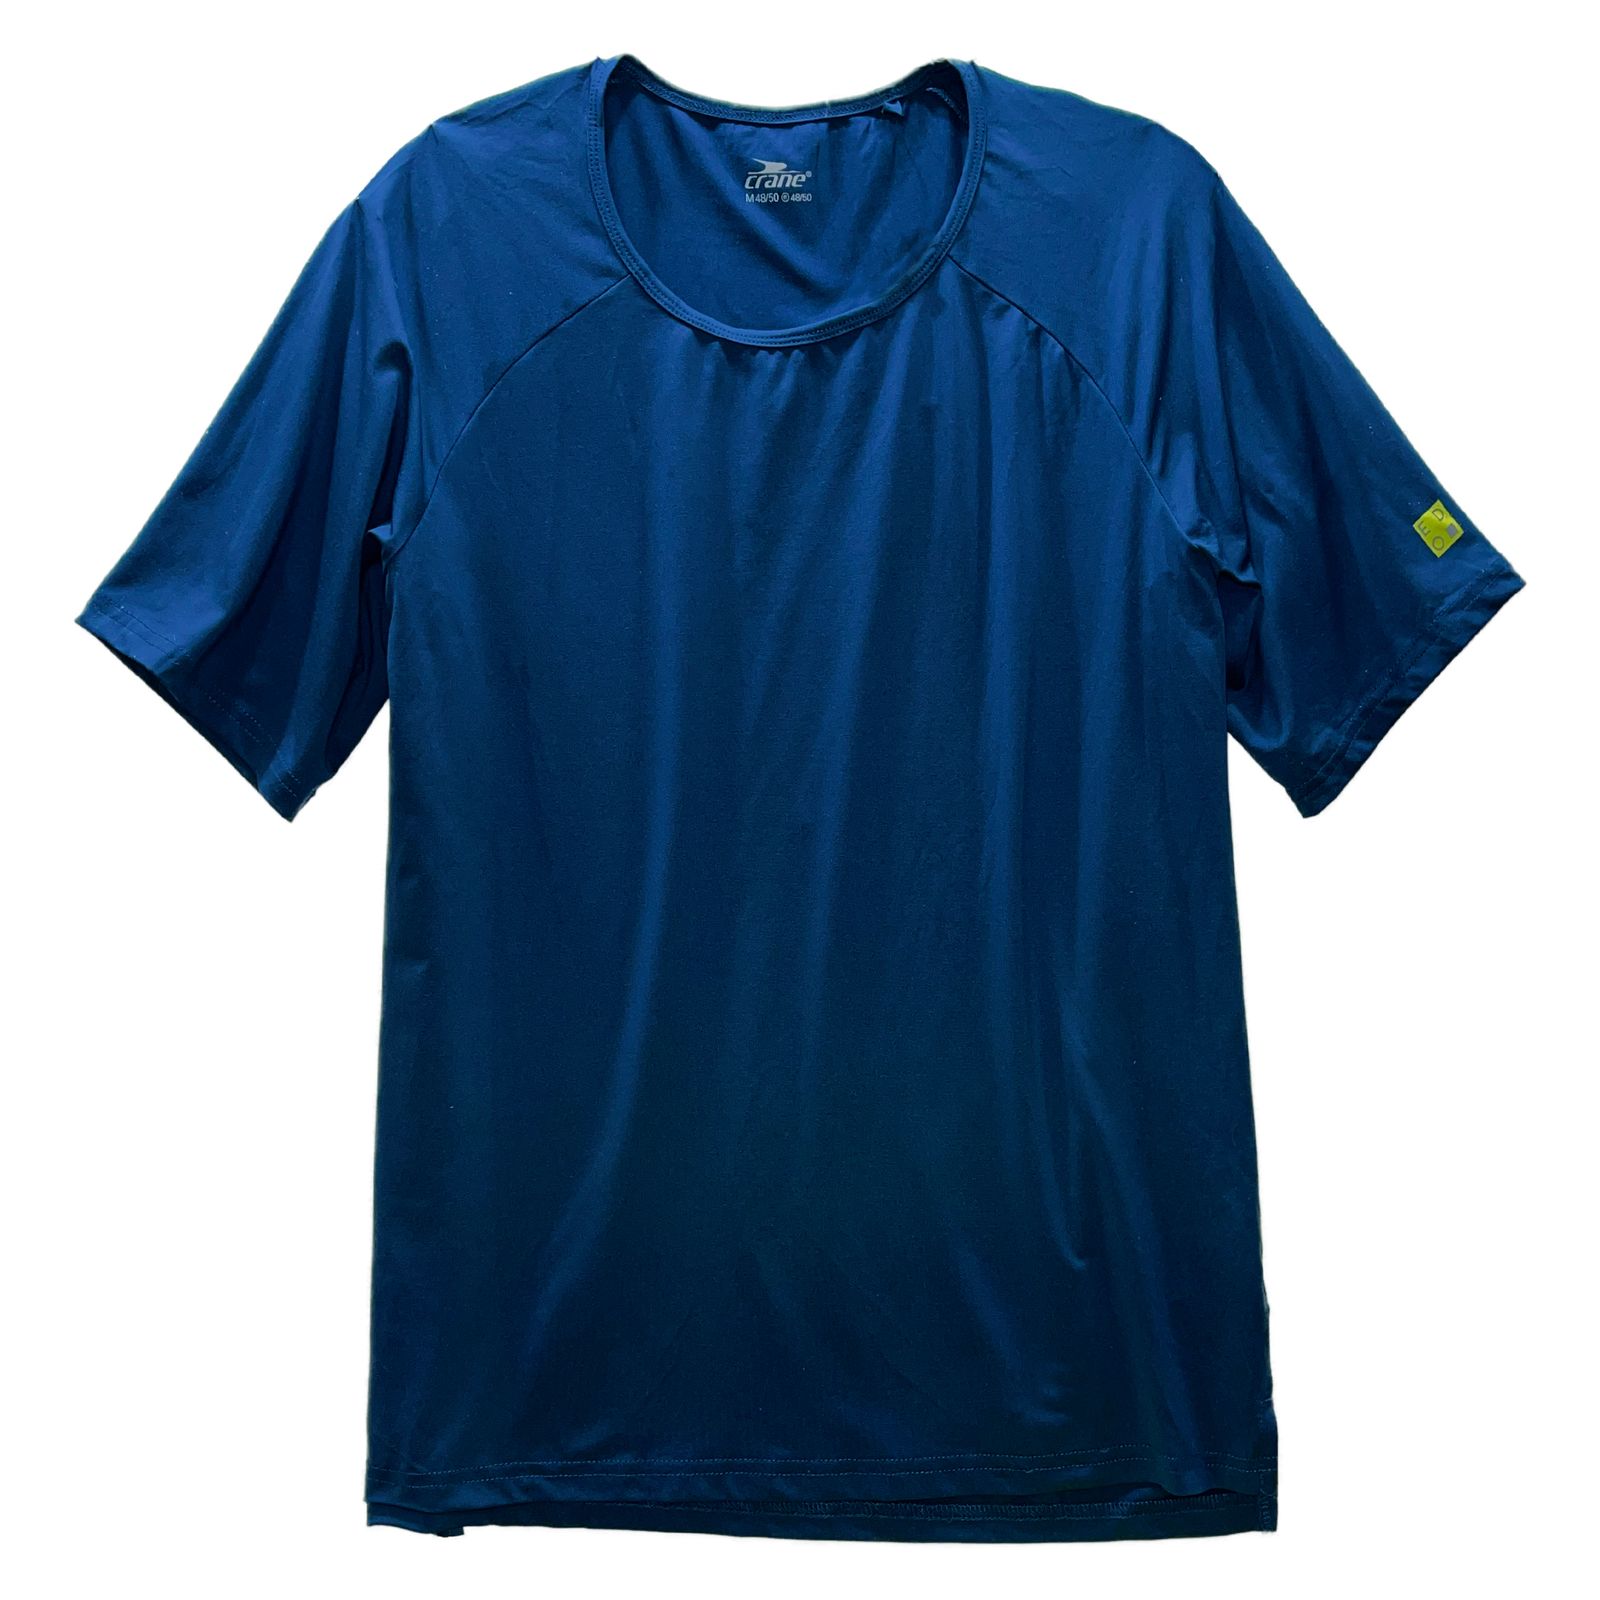 تی شرت ورزشی مردانه کرین مدل 540154 -  - 2